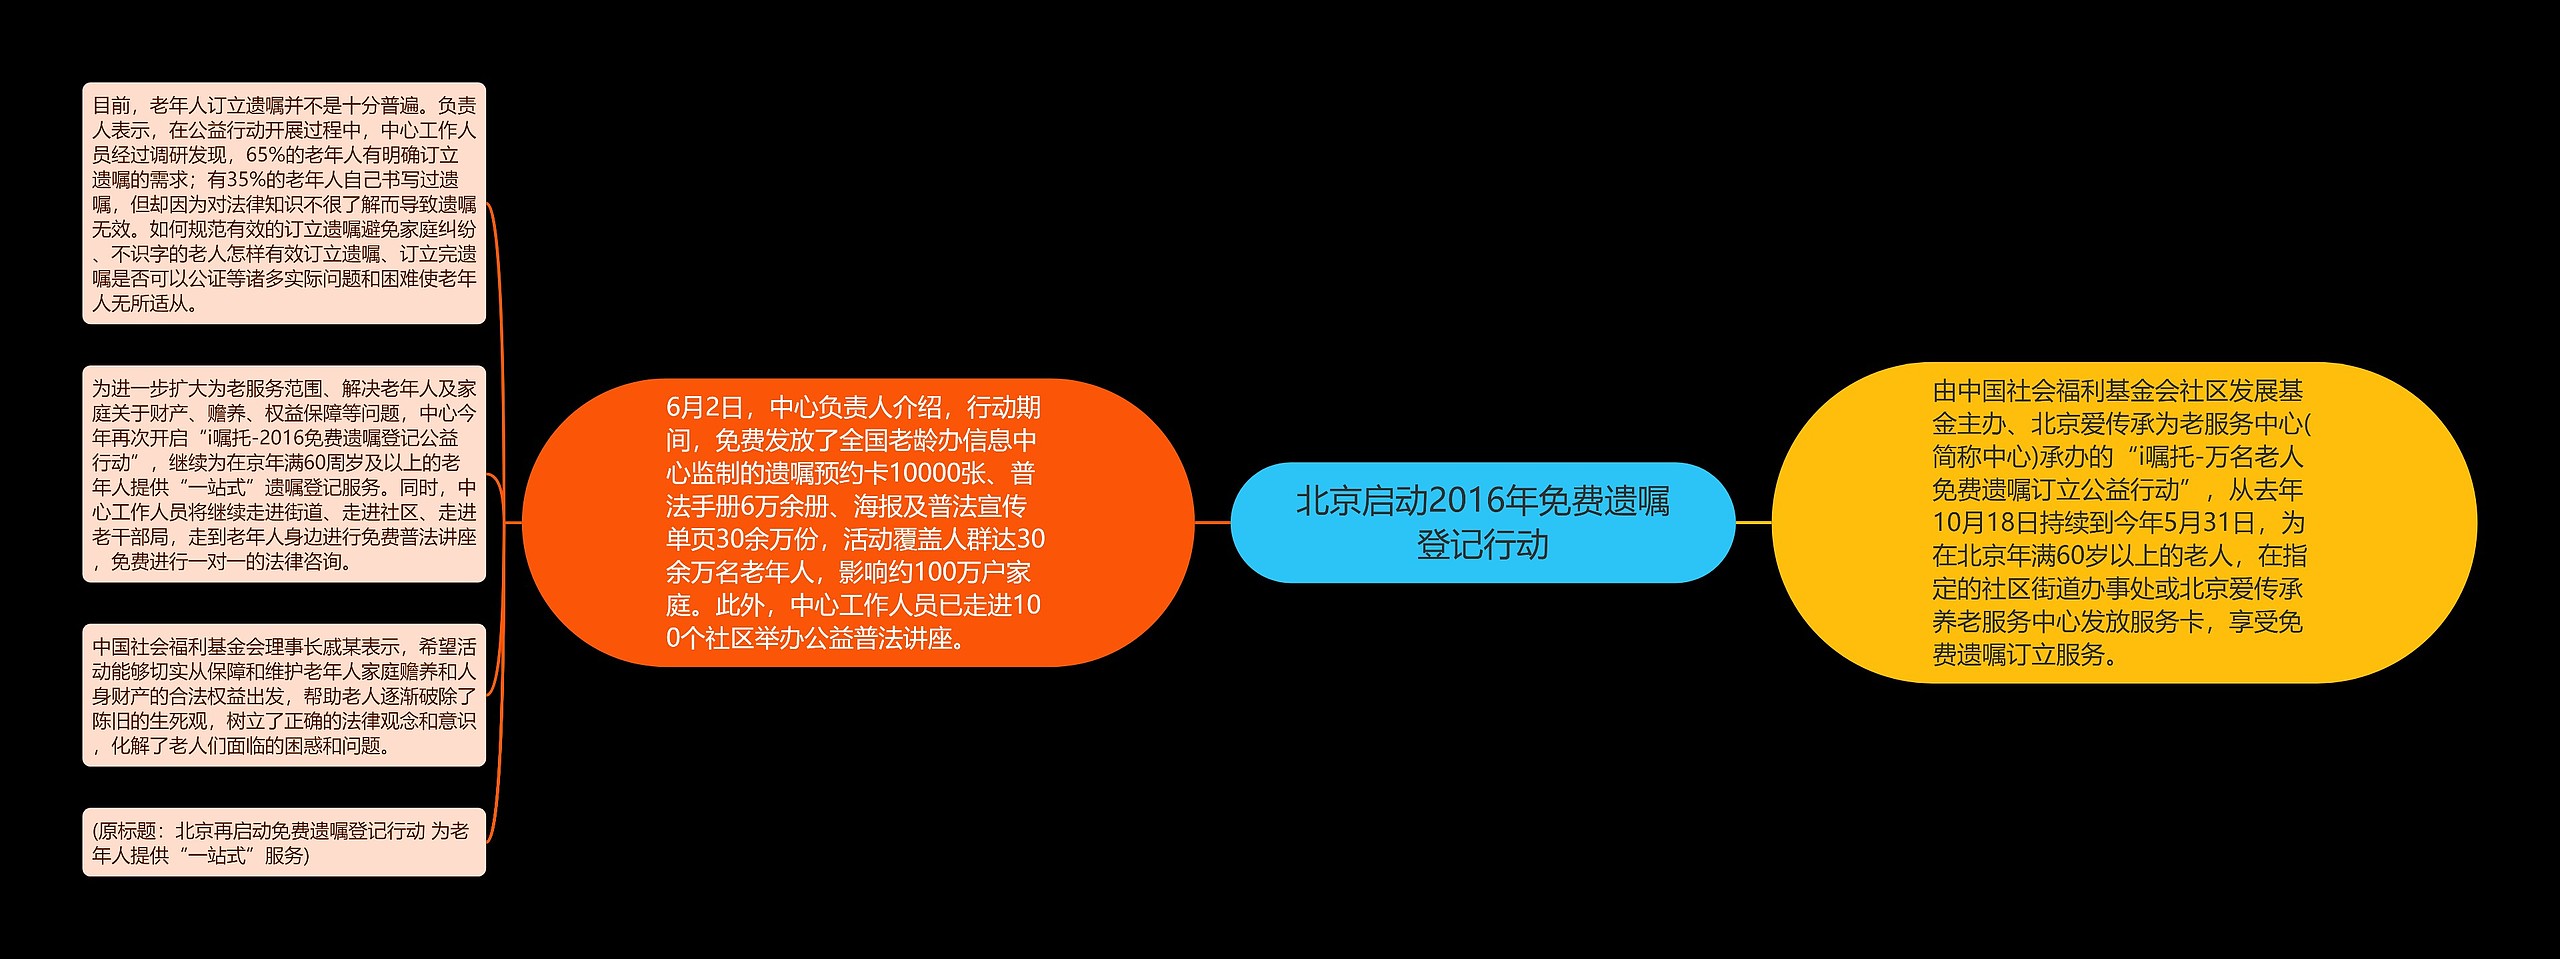 北京启动2016年免费遗嘱登记行动思维导图